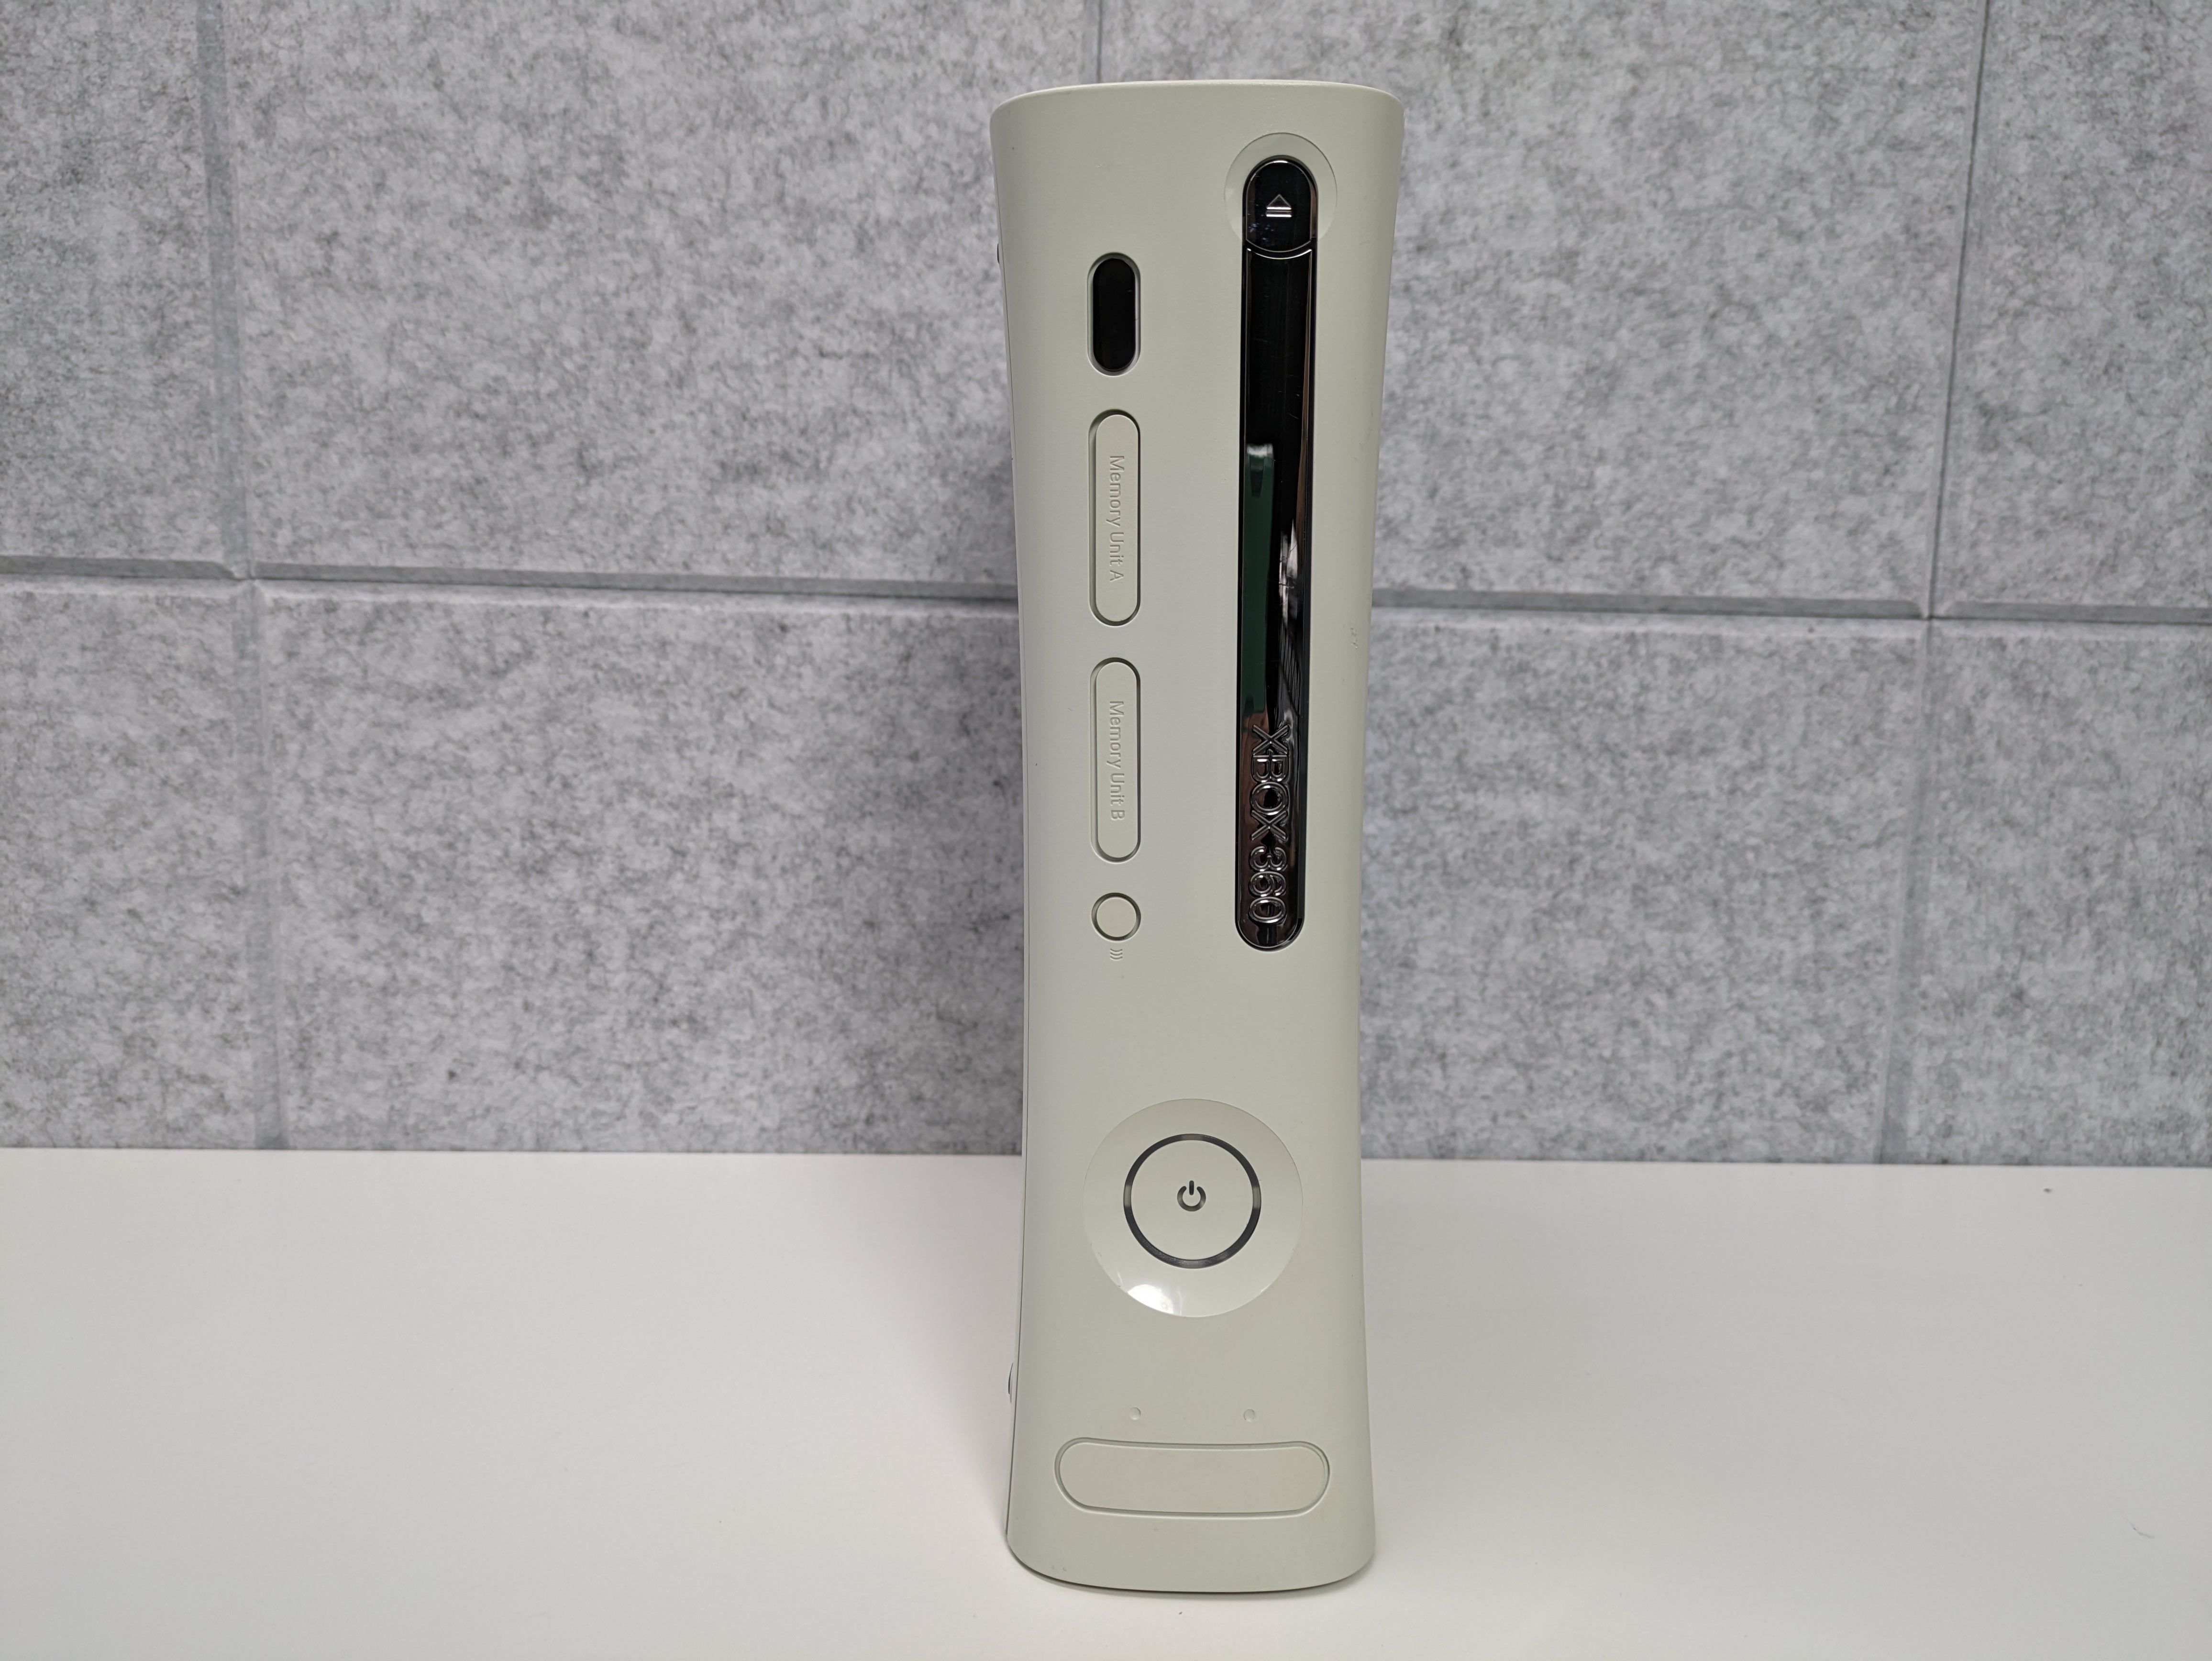 Microsoft 60GB Xbox 360 Console w/ Controller & Cords - USED (GG54)